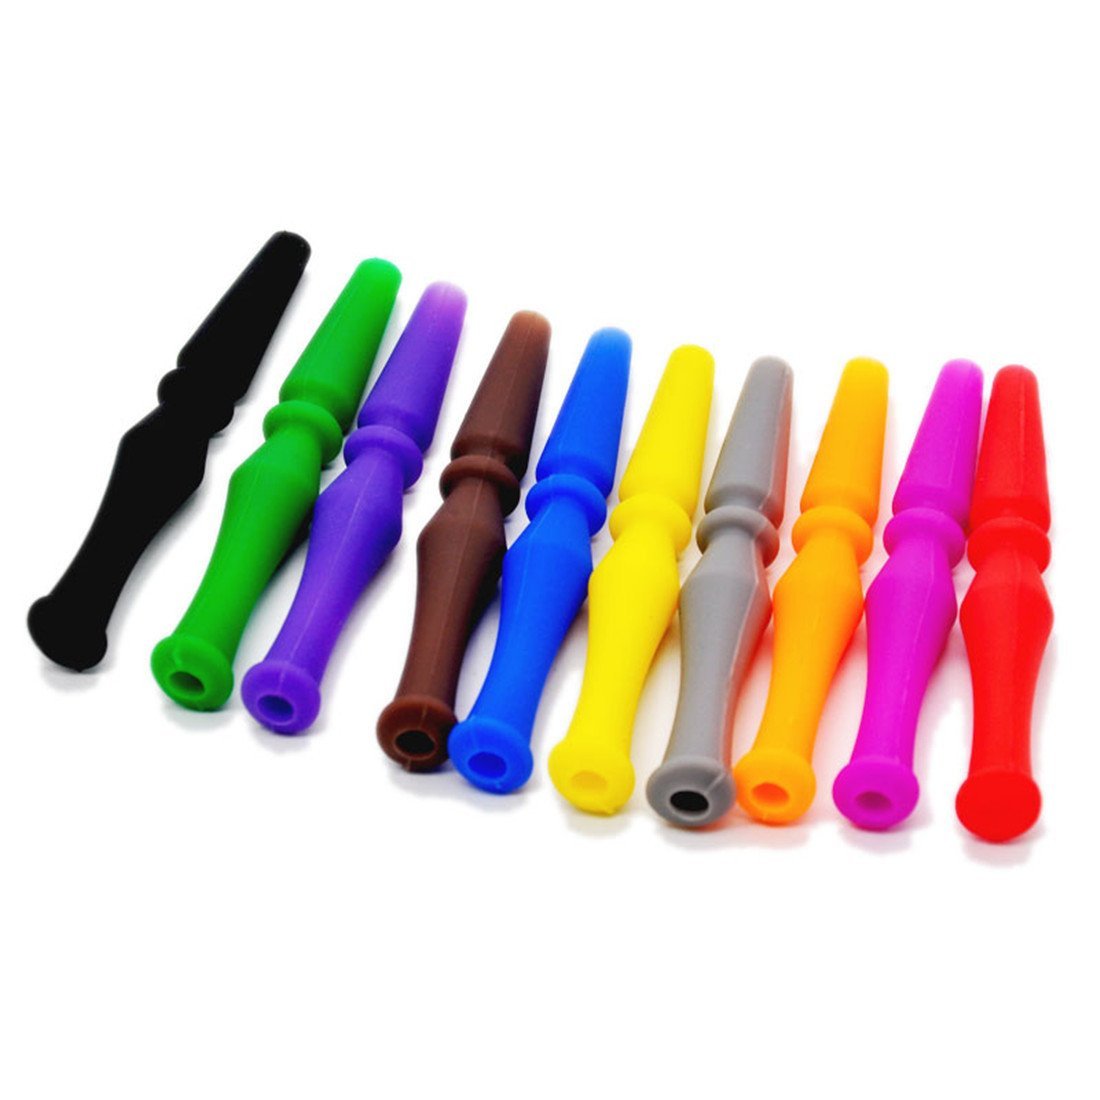 Gummimundstykke - Amy Shop - Hygiejne mundstykker til vandpibe lavet af silikone i forskellige farver.